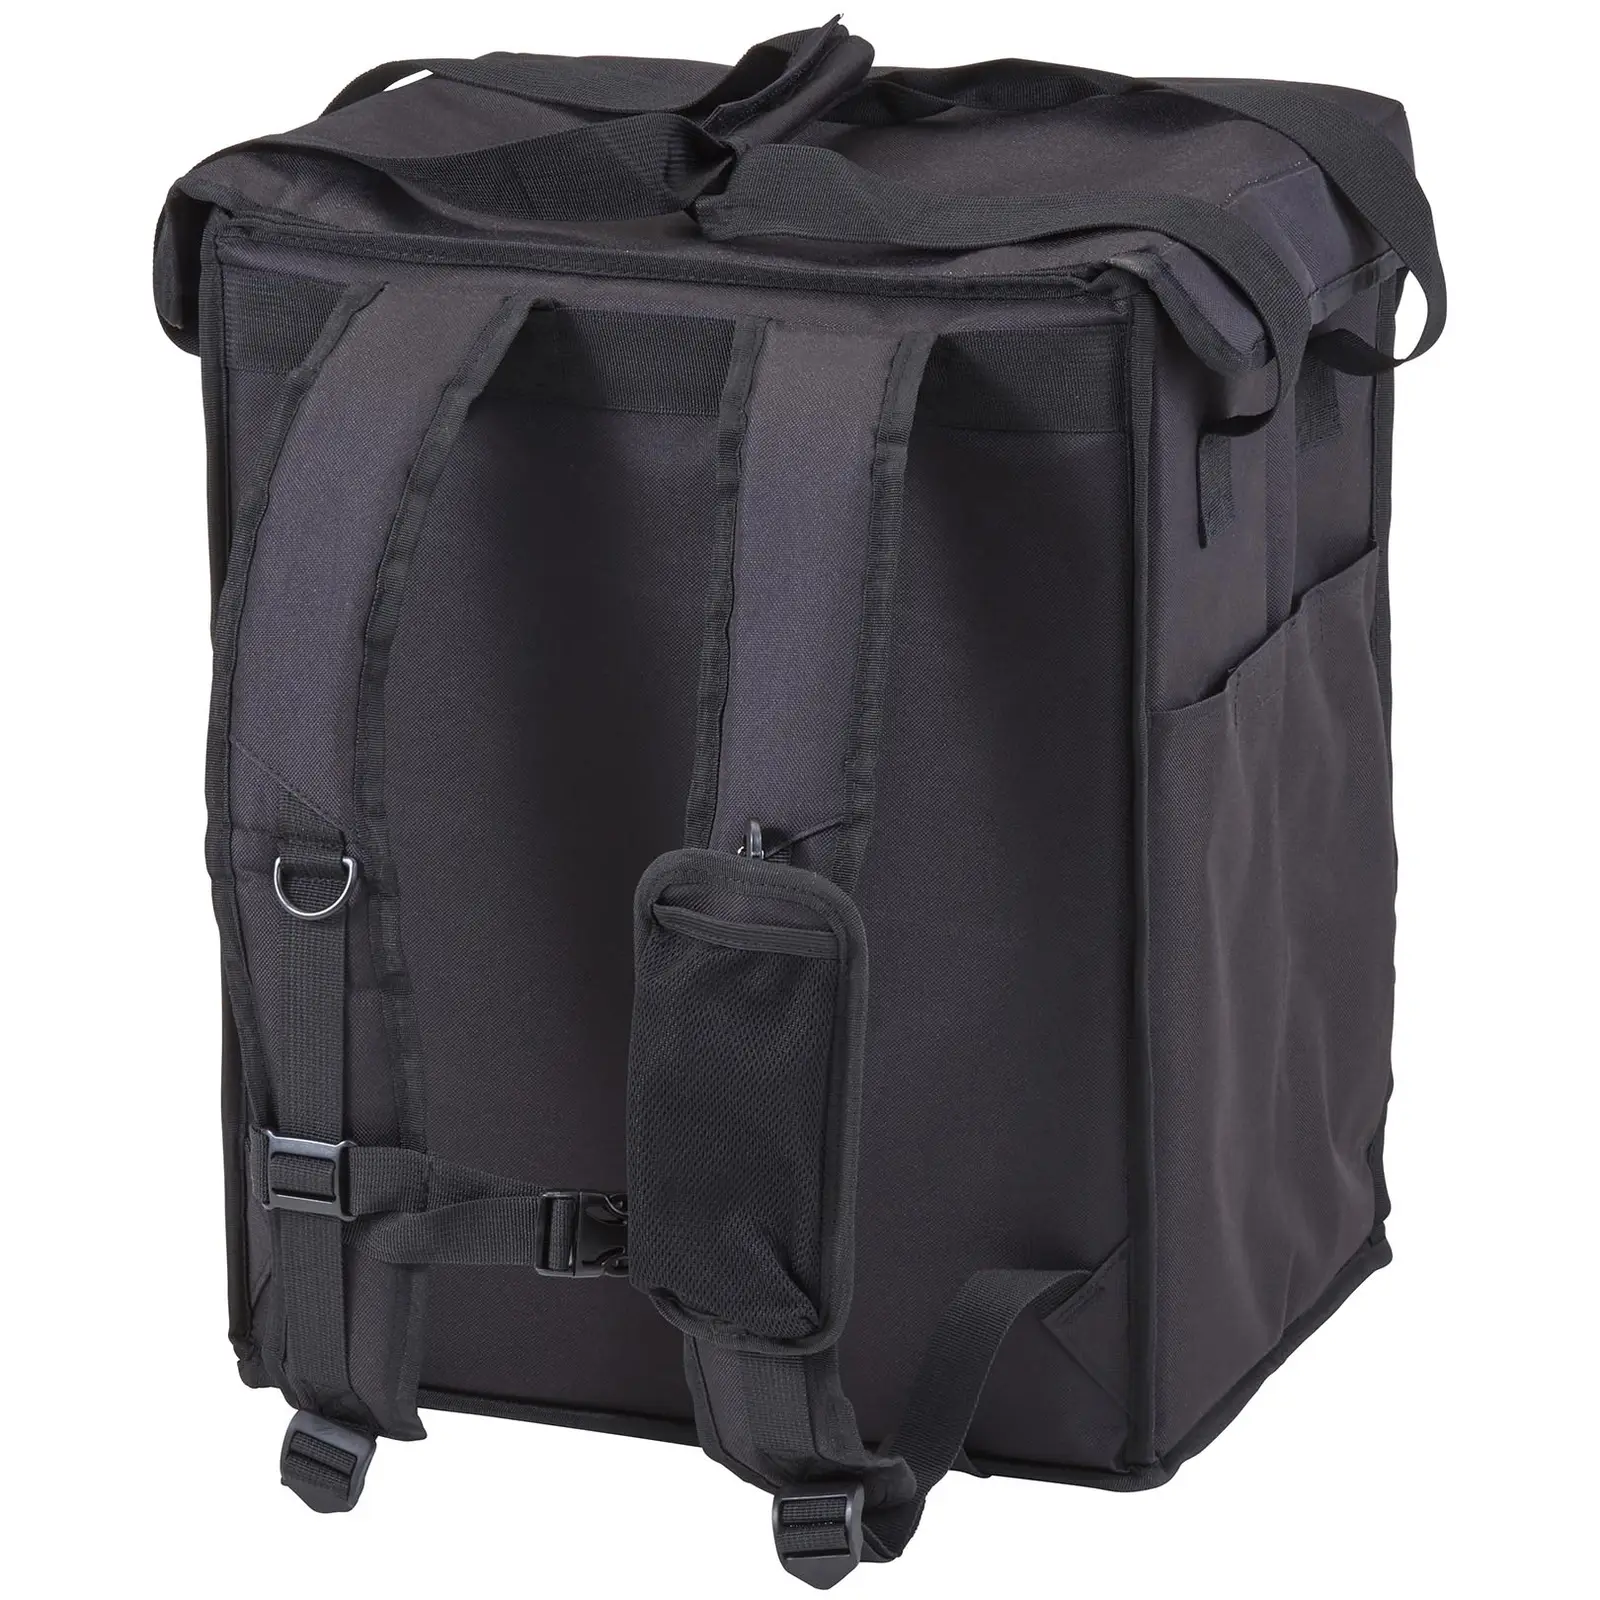 Ételszállító táska – 28 x 35,5 x 43 cm – Fekete – hátizsák